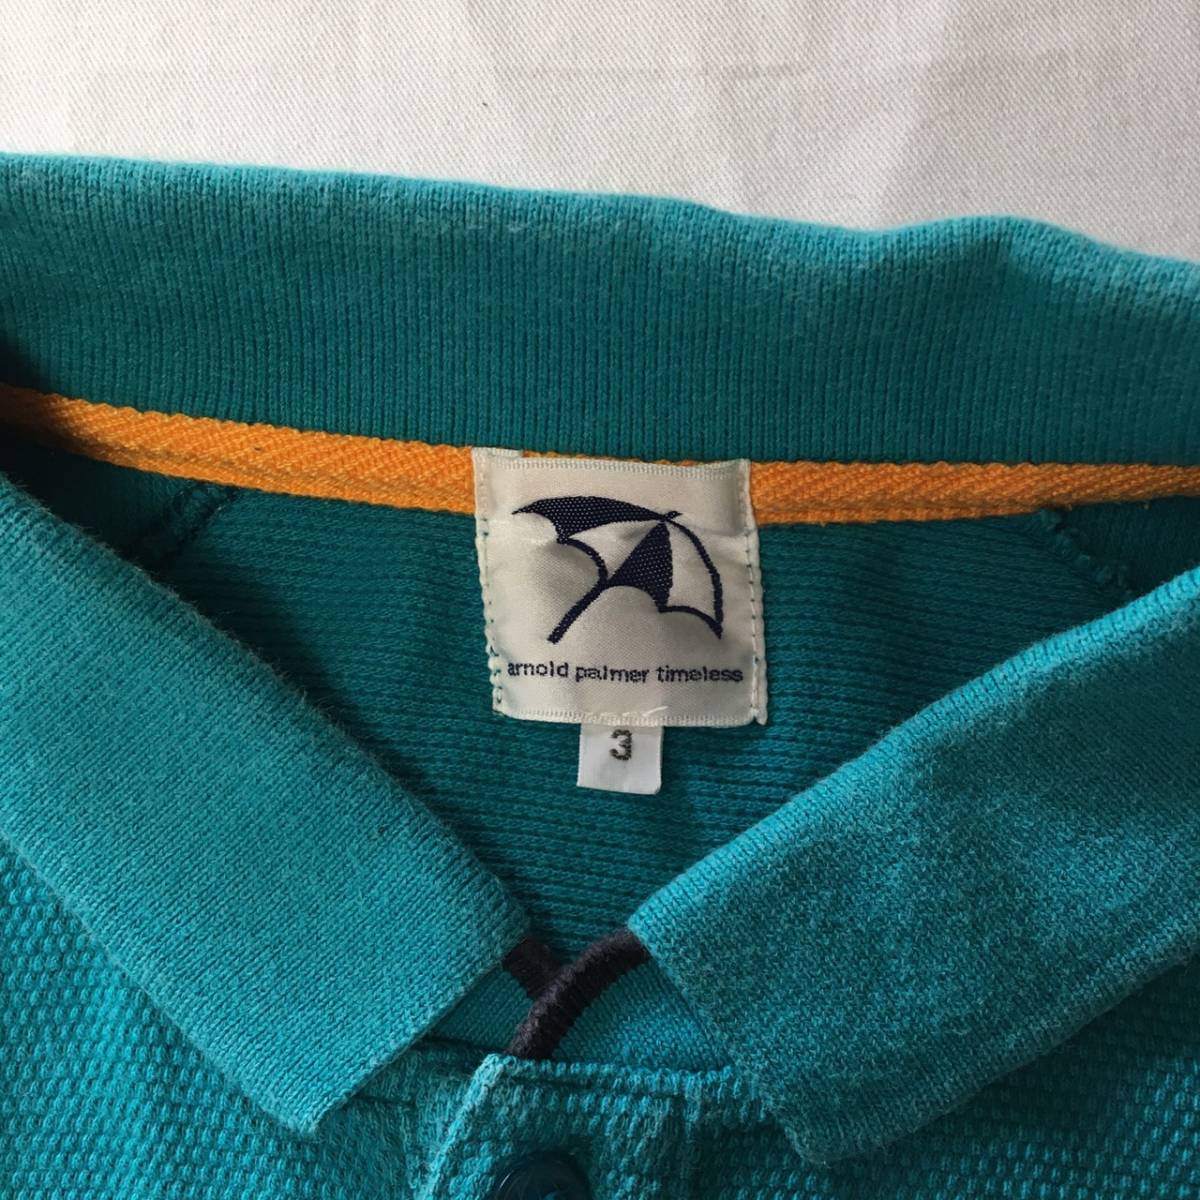  Arnold Palmer Rena un polo-shirt men's short sleeves Bick Logo embroidery size 3 button shirt 